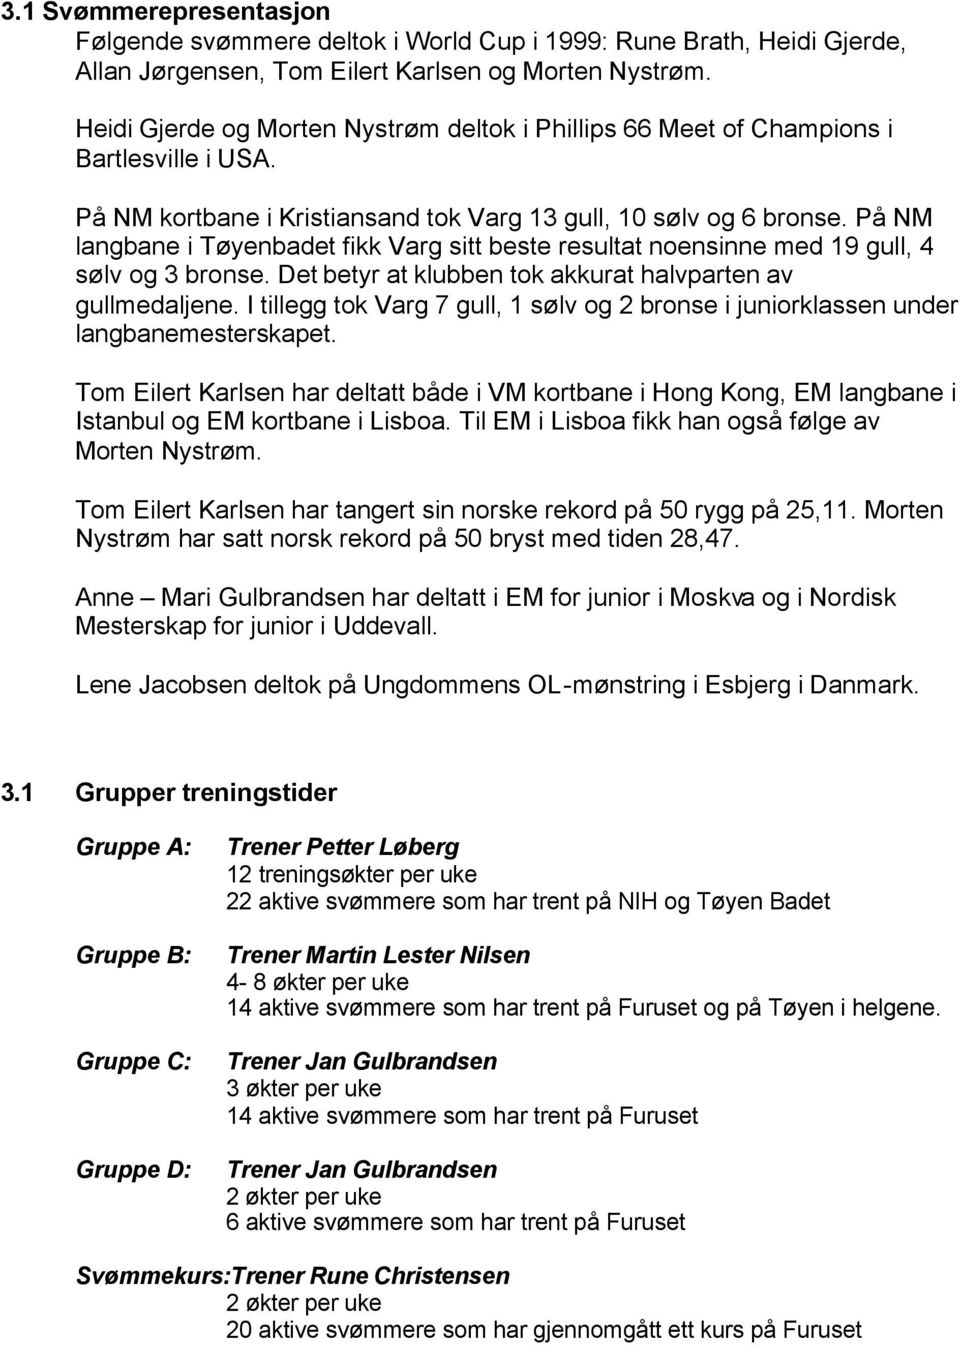 På NM langbane i Tøyenbadet fikk Varg sitt beste resultat noensinne med 19 gull, 4 sølv og 3 bronse. Det betyr at klubben tok akkurat halvparten av gullmedaljene.